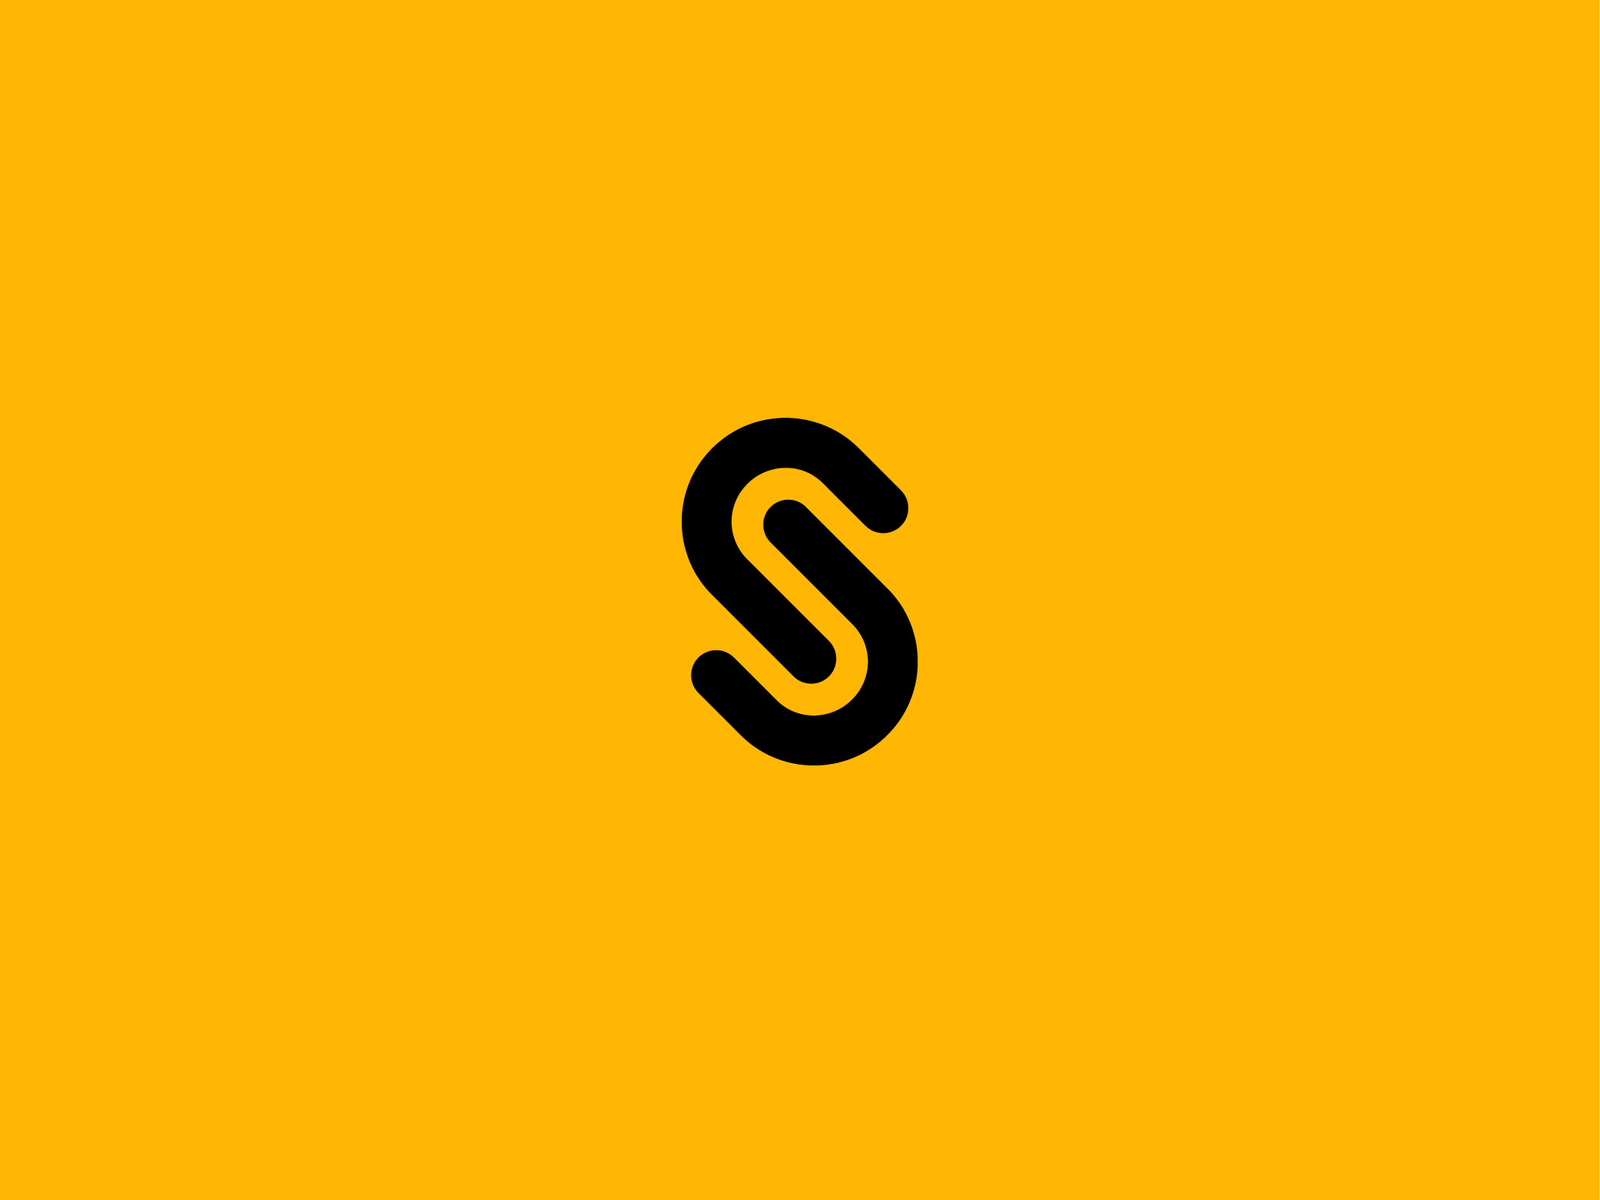 s-letter-logo-concept-by-beniuto-design-on-dribbble